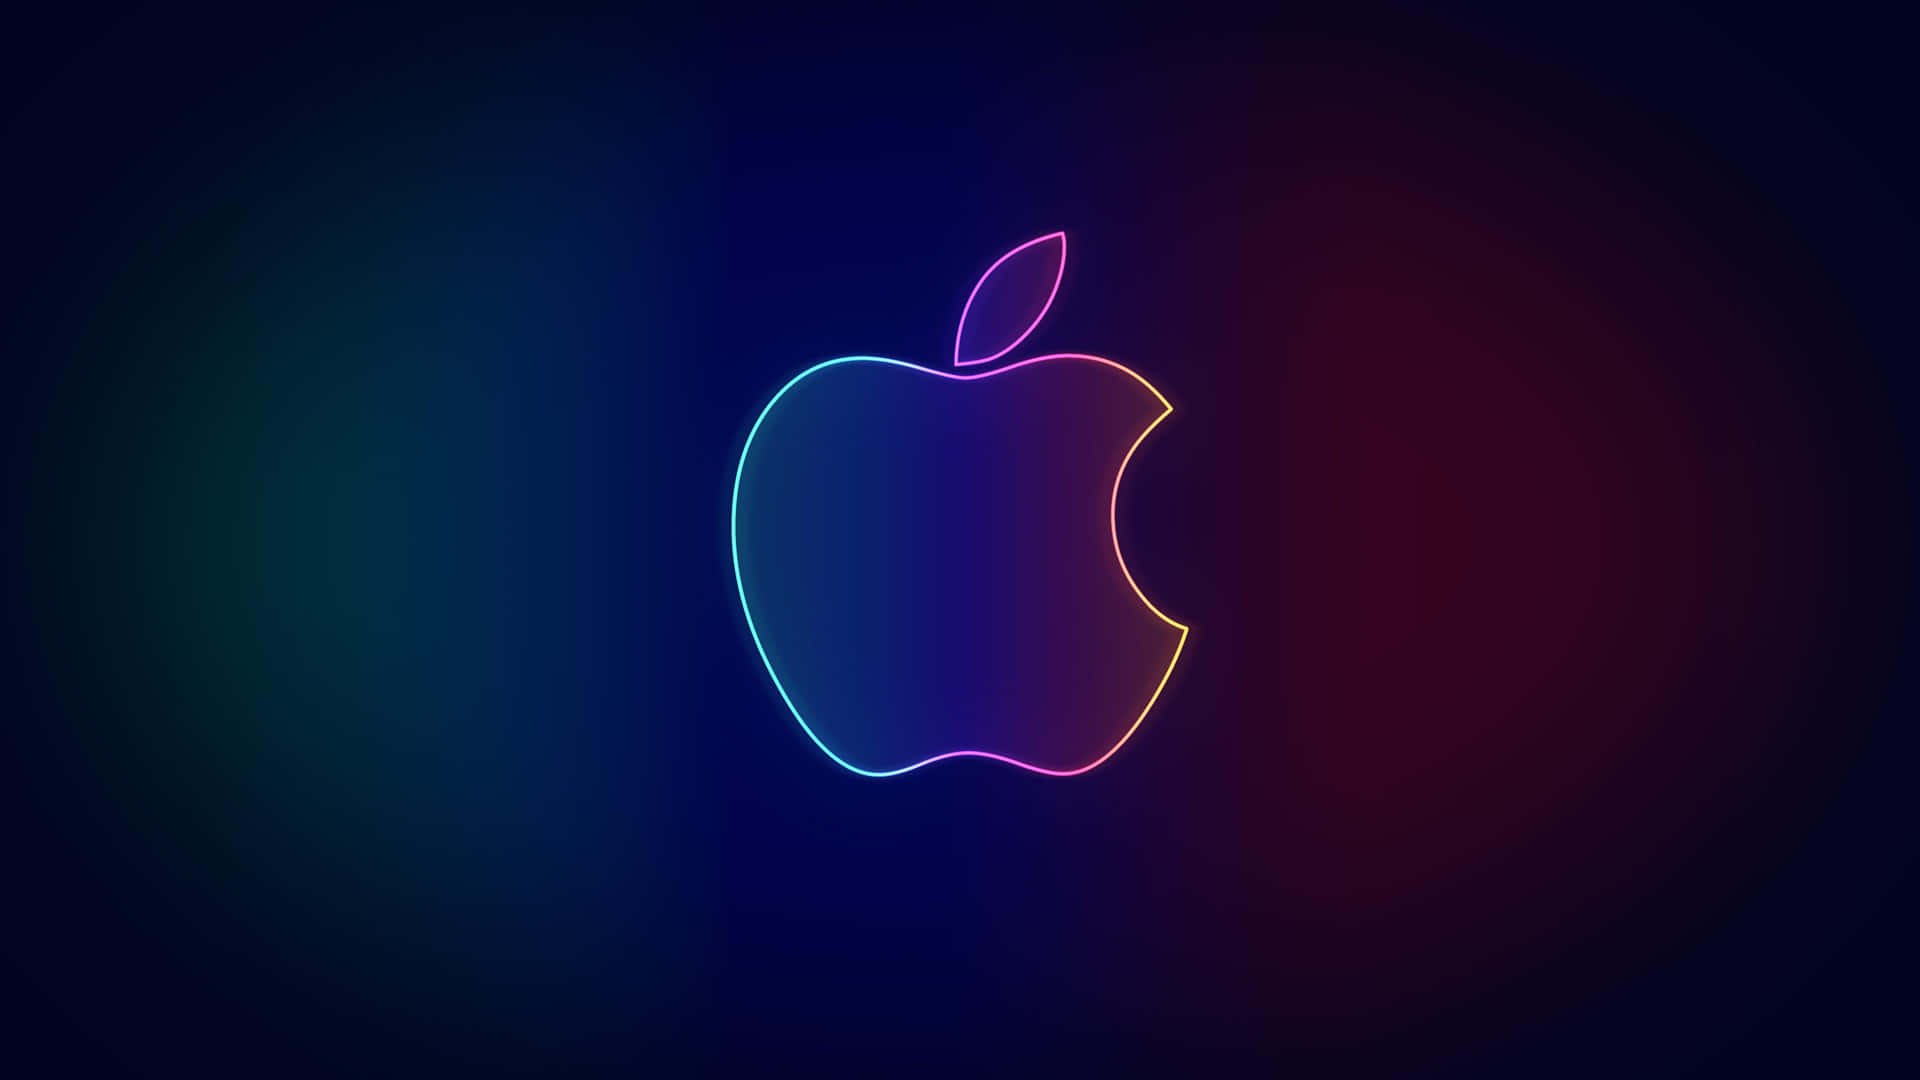 Logodi Apple Su Uno Sfondo Scuro